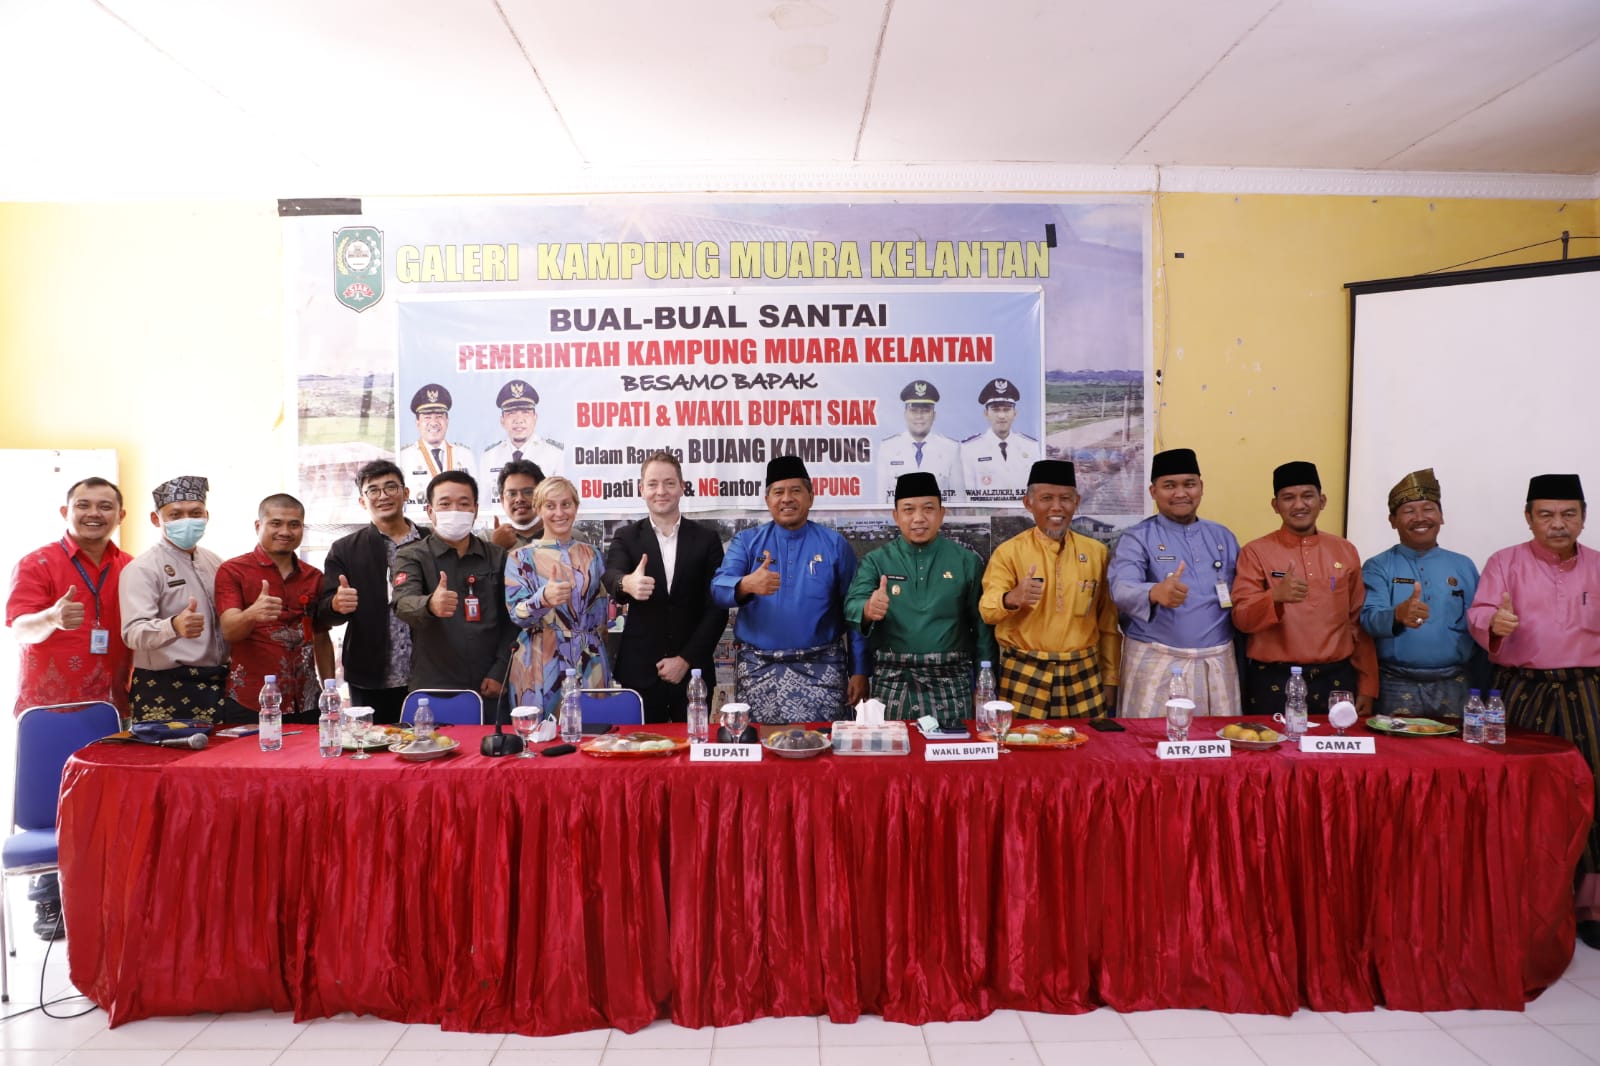 Bujang Kampung Muara Kelantan Kecamatan Mandau, Dinas Kesehatan Turun Langsung Ke Lokasi